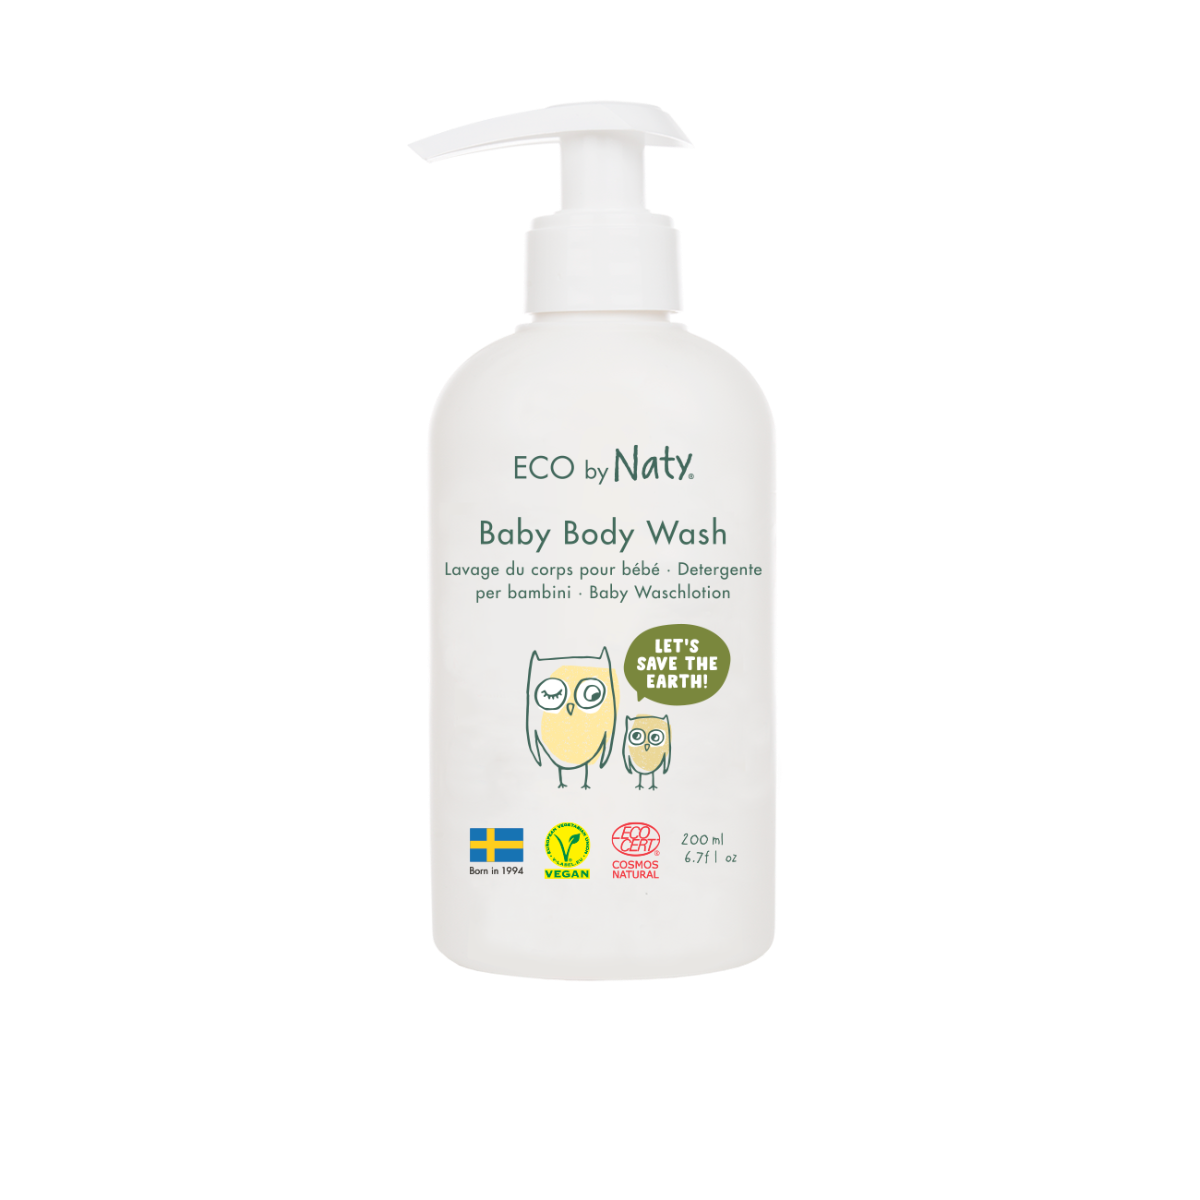 Detergente mani e corpo Eco by Naty per bambini, a base vegetale con lo 0%  di profumo.